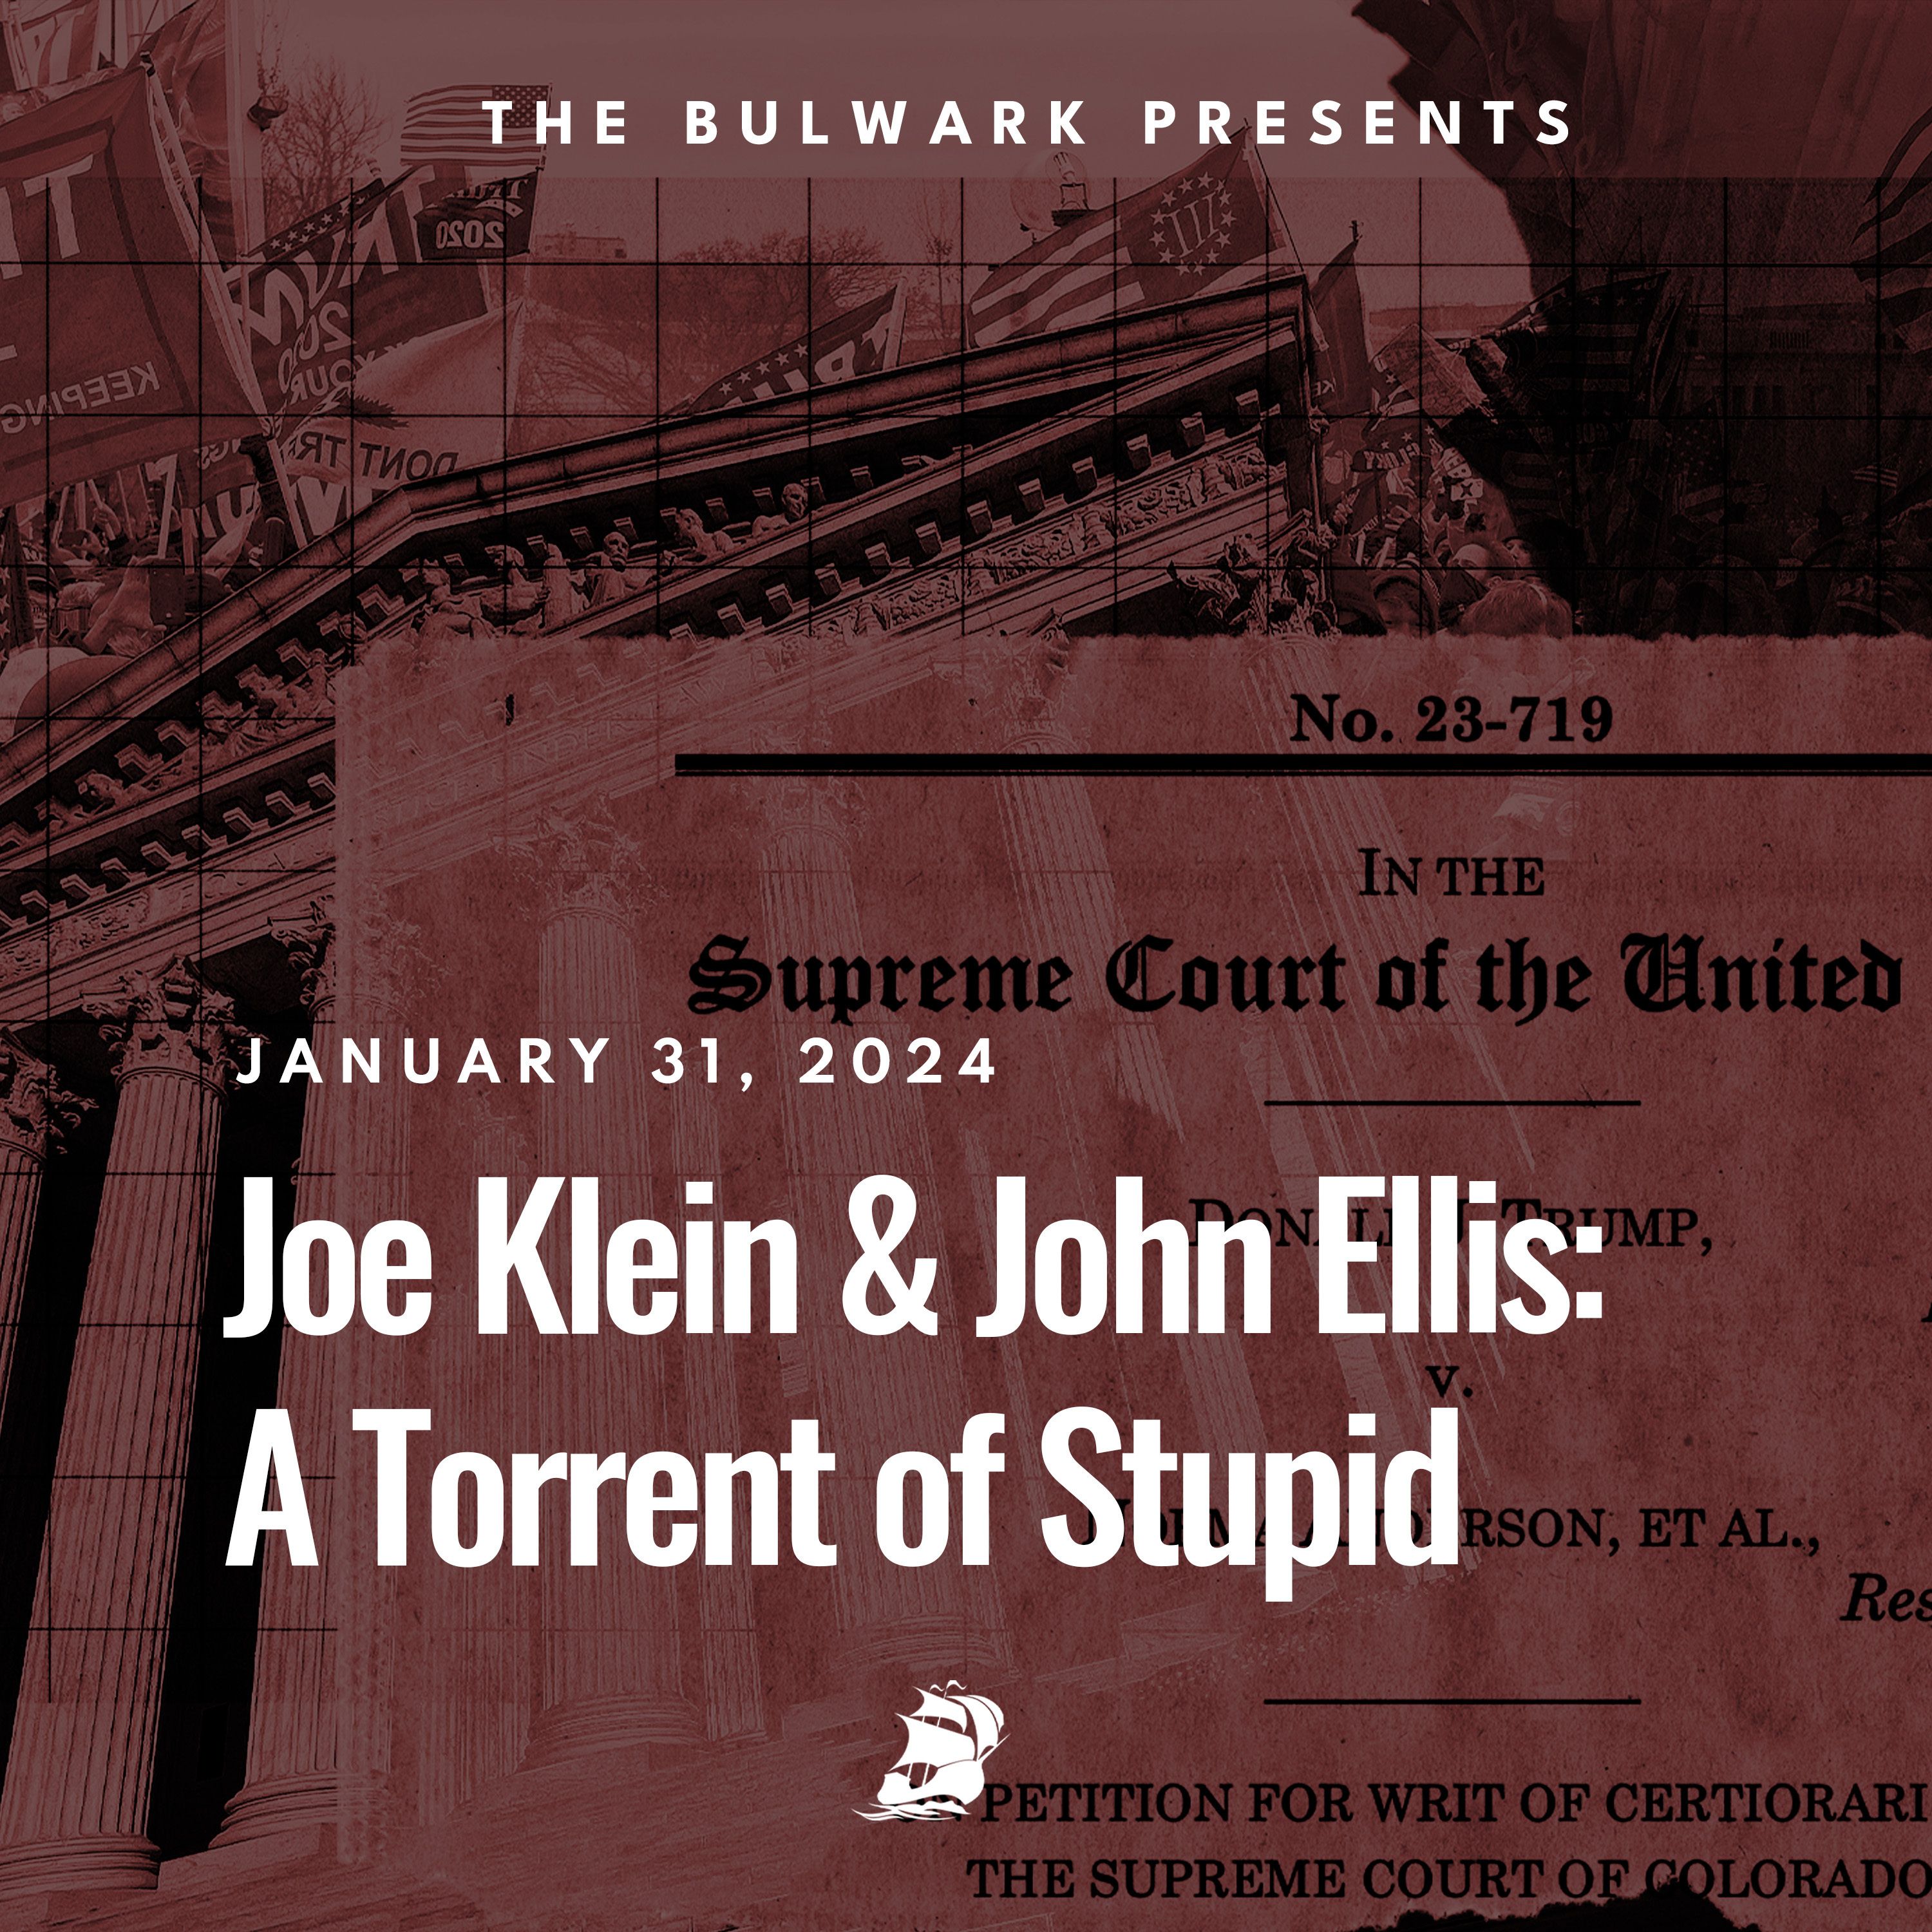 Joe Klein & John Ellis: A Torrent of Stupid by The Bulwark Podcast